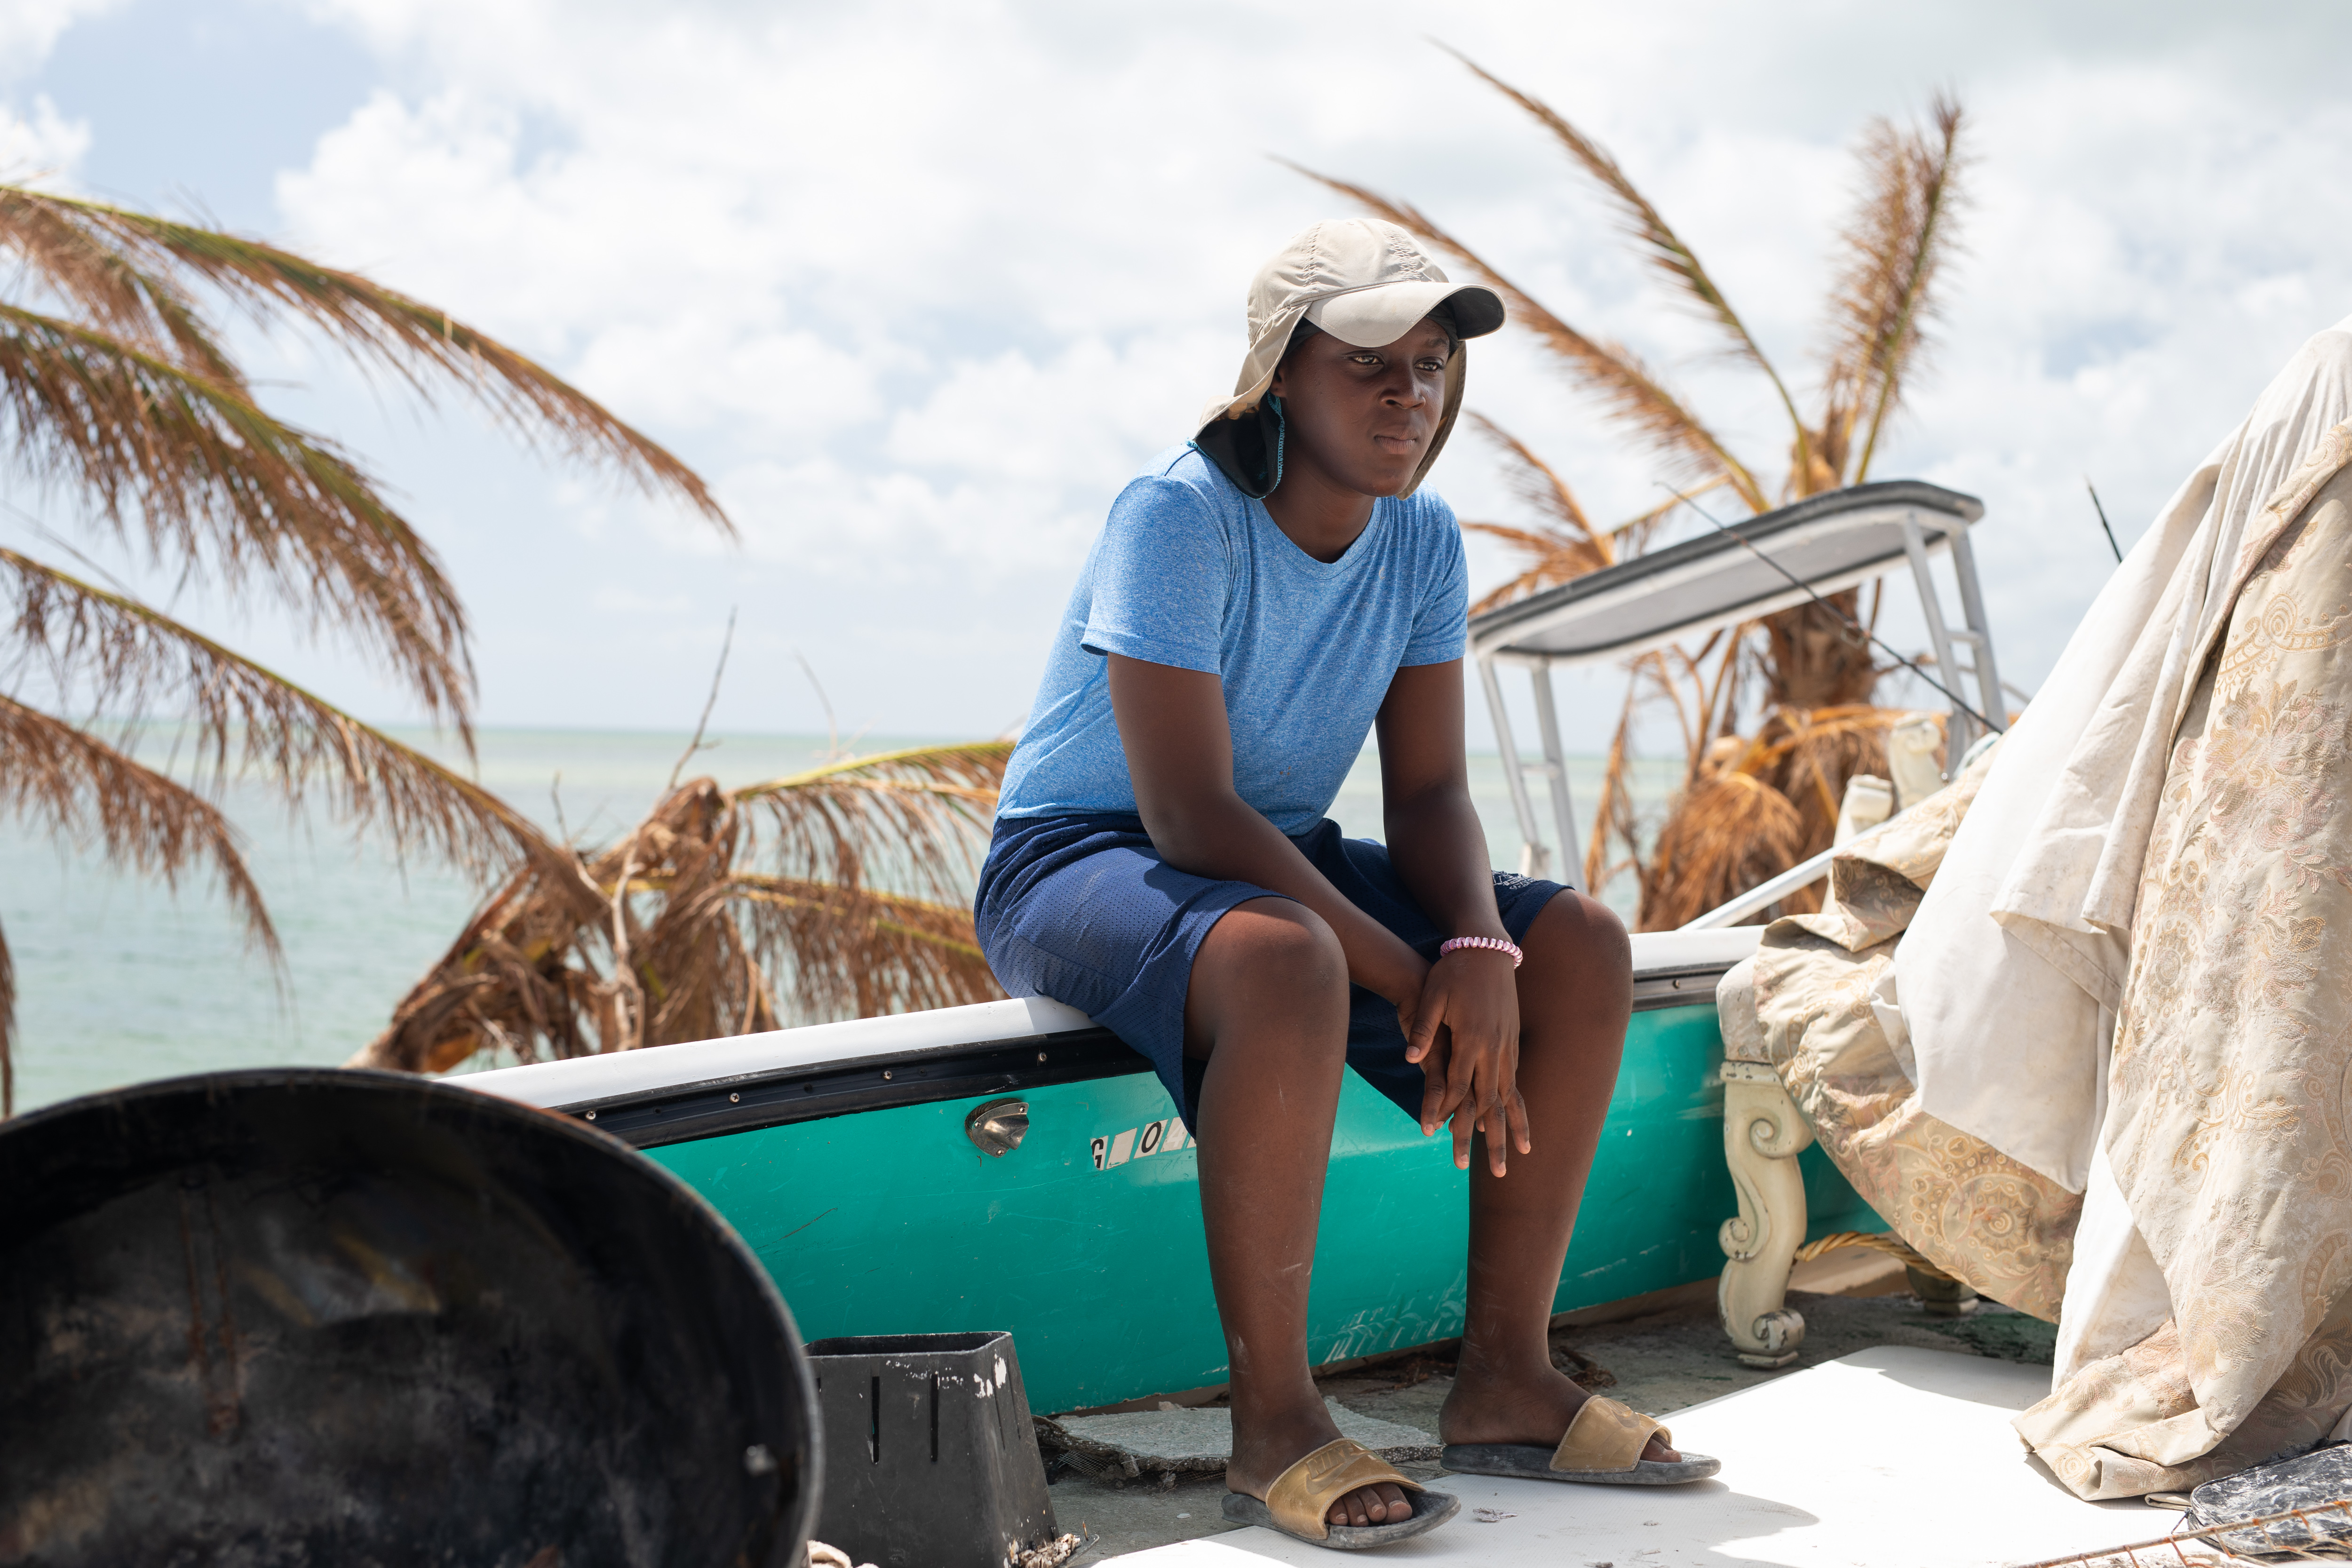 Bahamaa jälleenrakennetaan hurrikaanin jälkeen